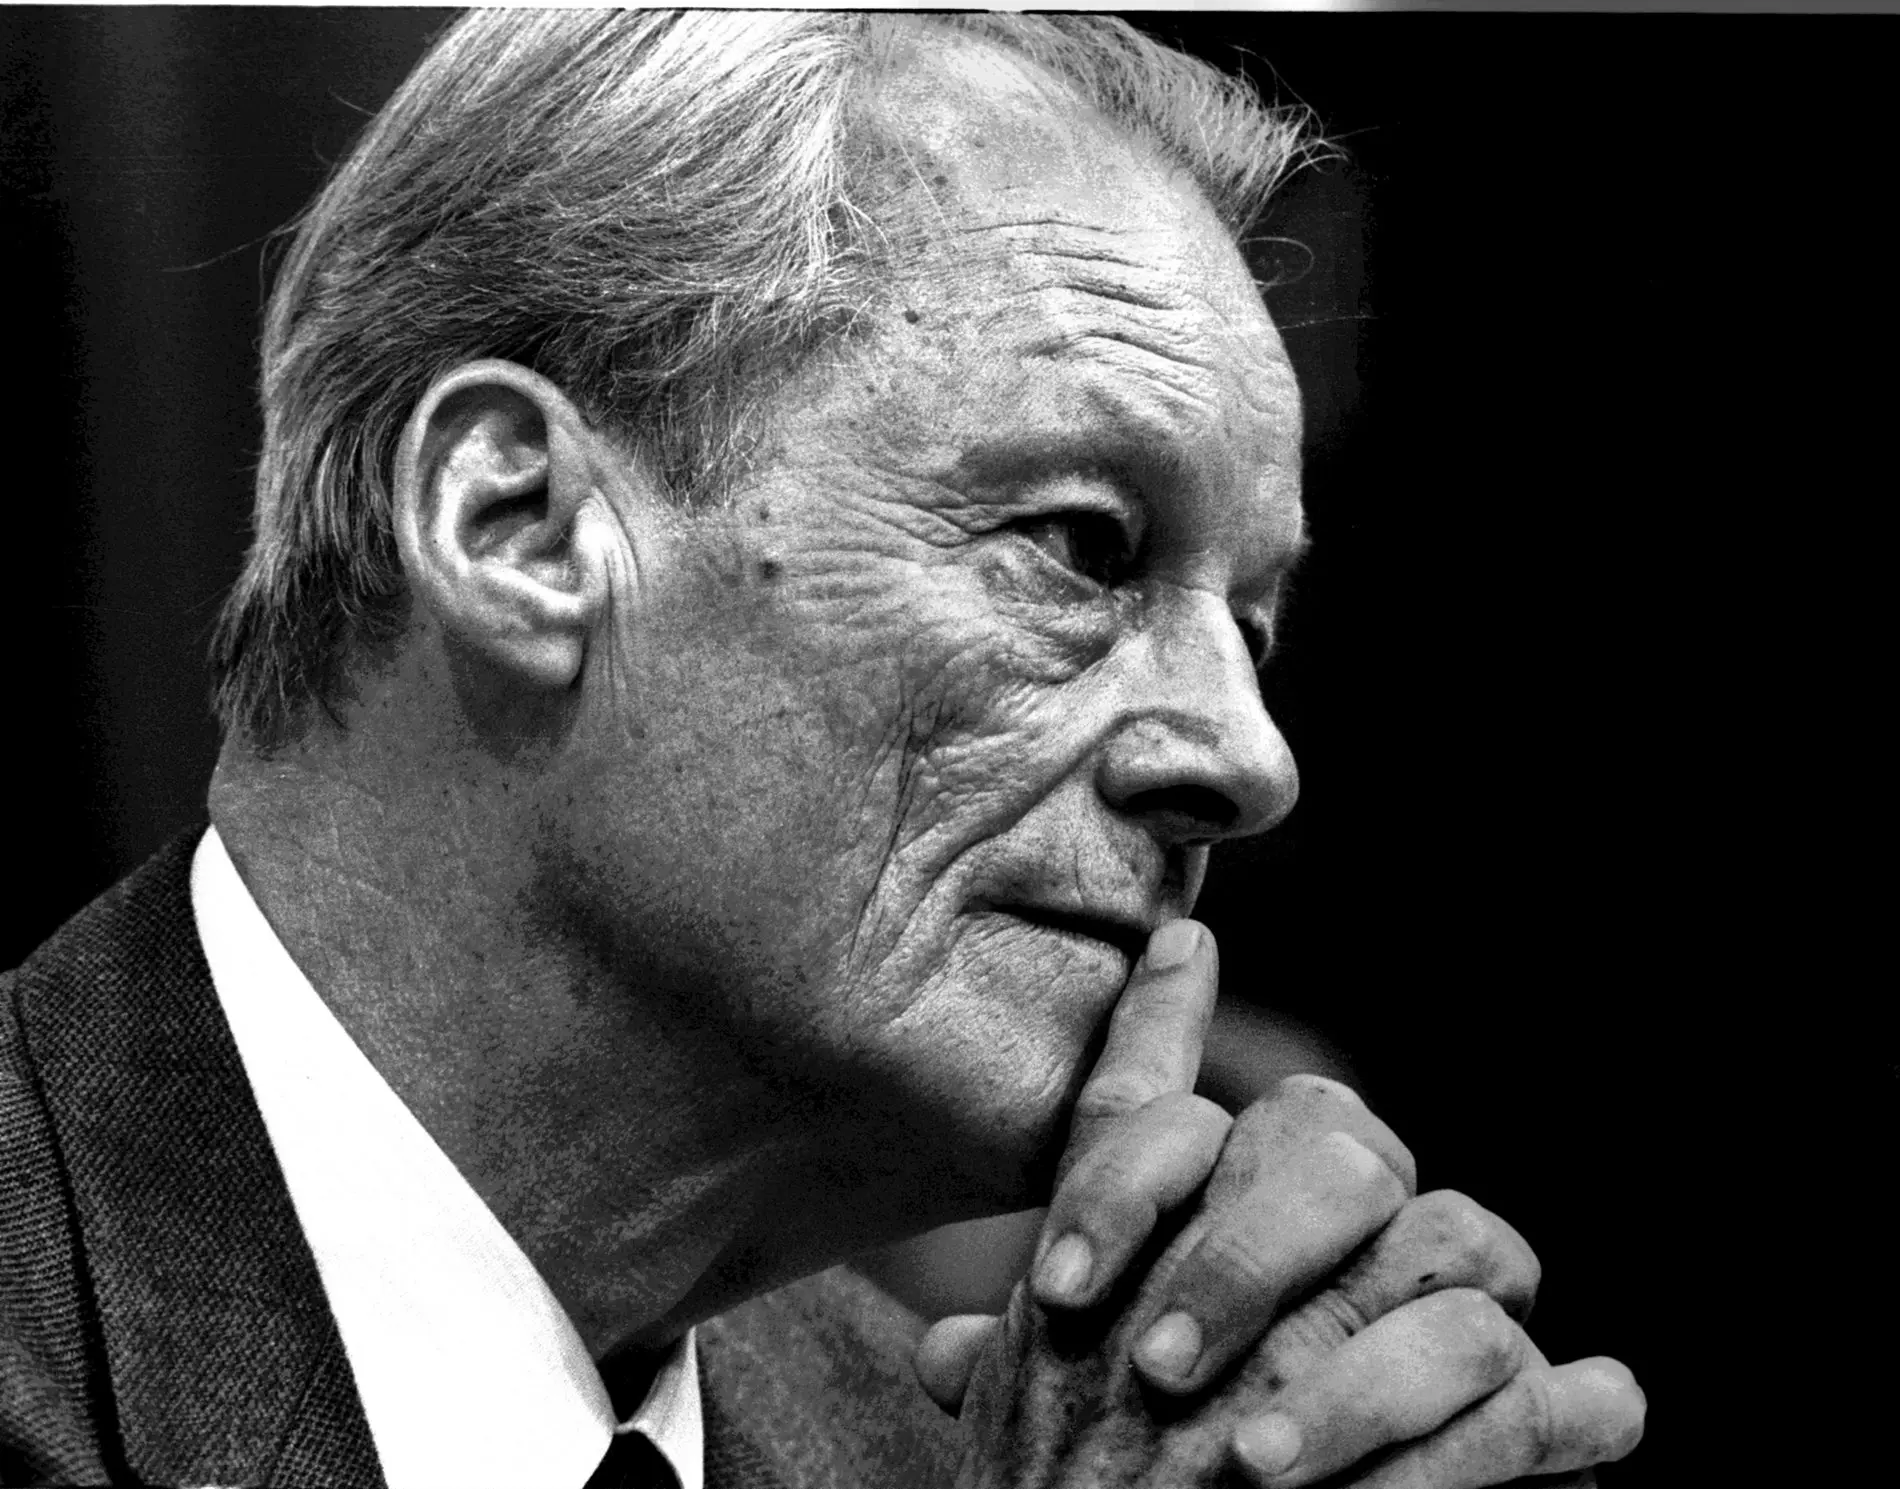 Schwarz-Weiß Bild Willy Brandt im Profil